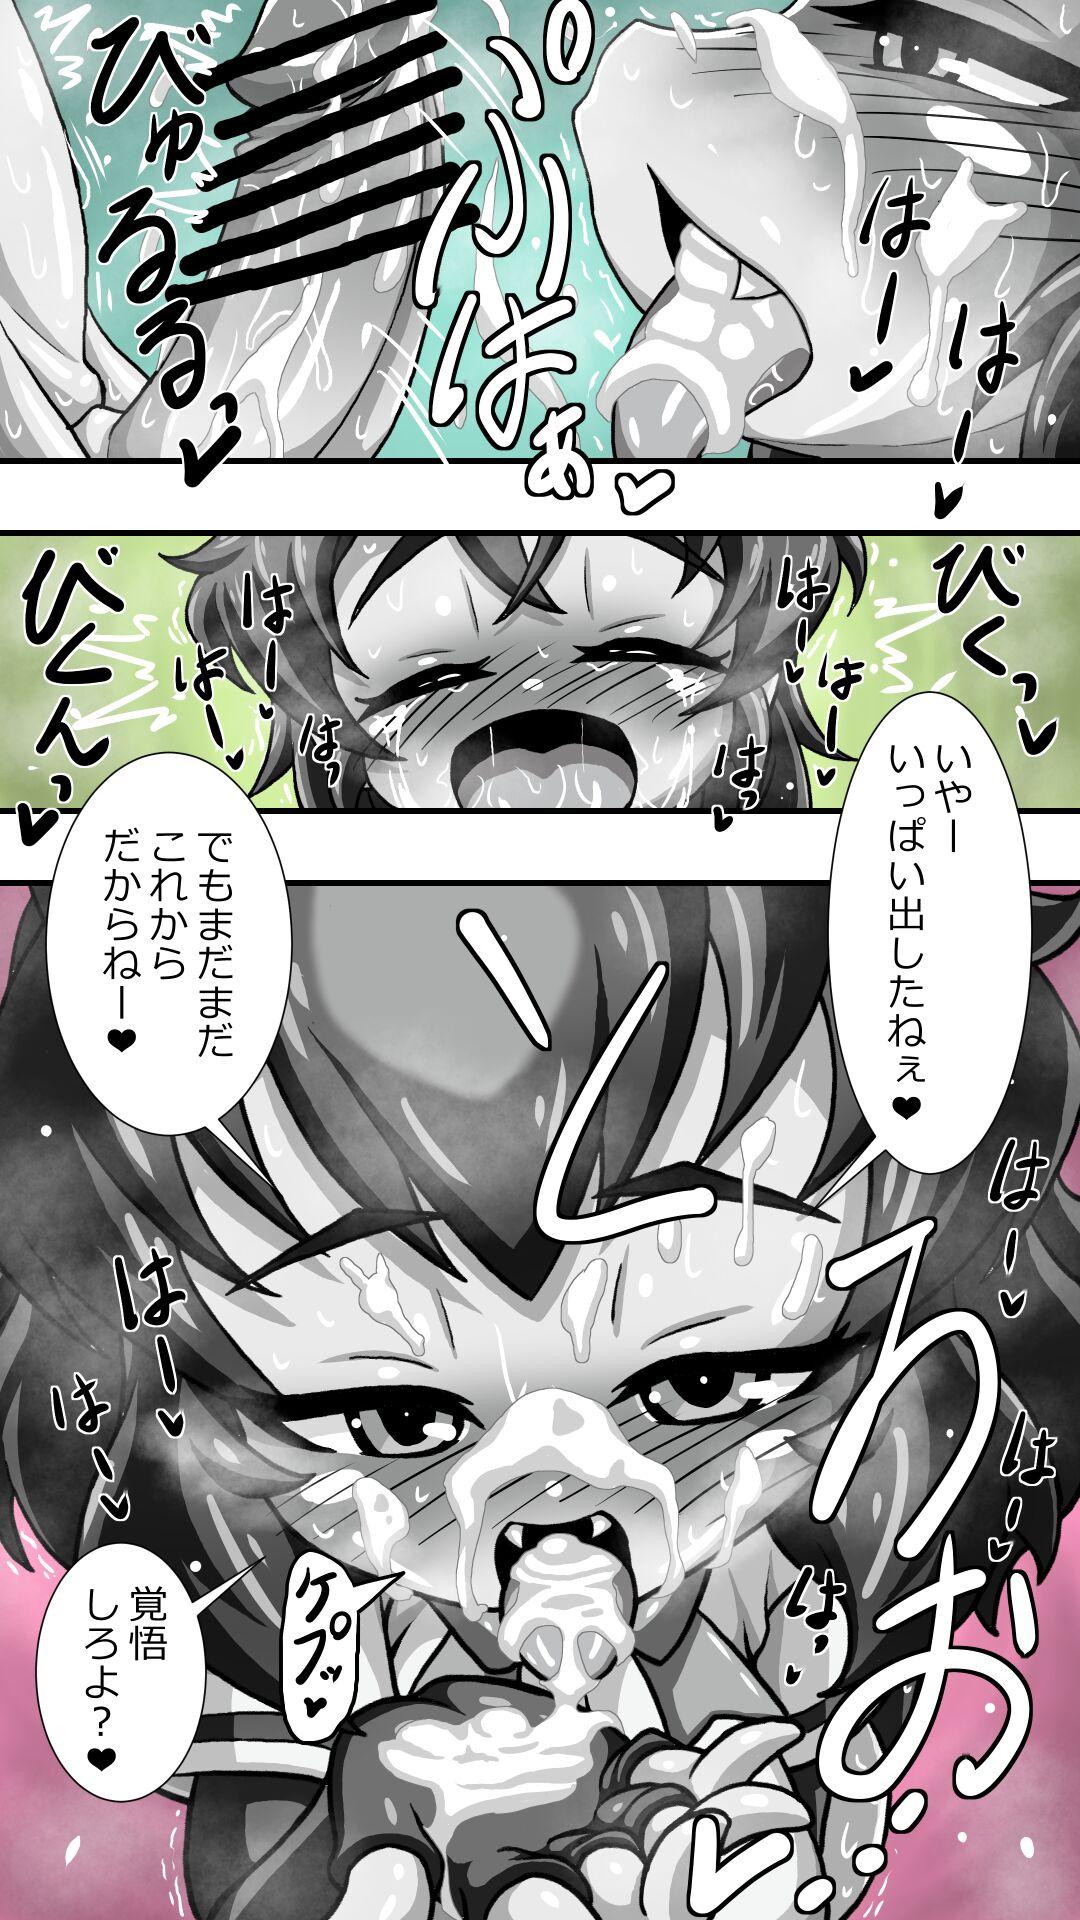 【再掲】ヒグママとショタ隊長のアナルえっち16P漫画収集版 3